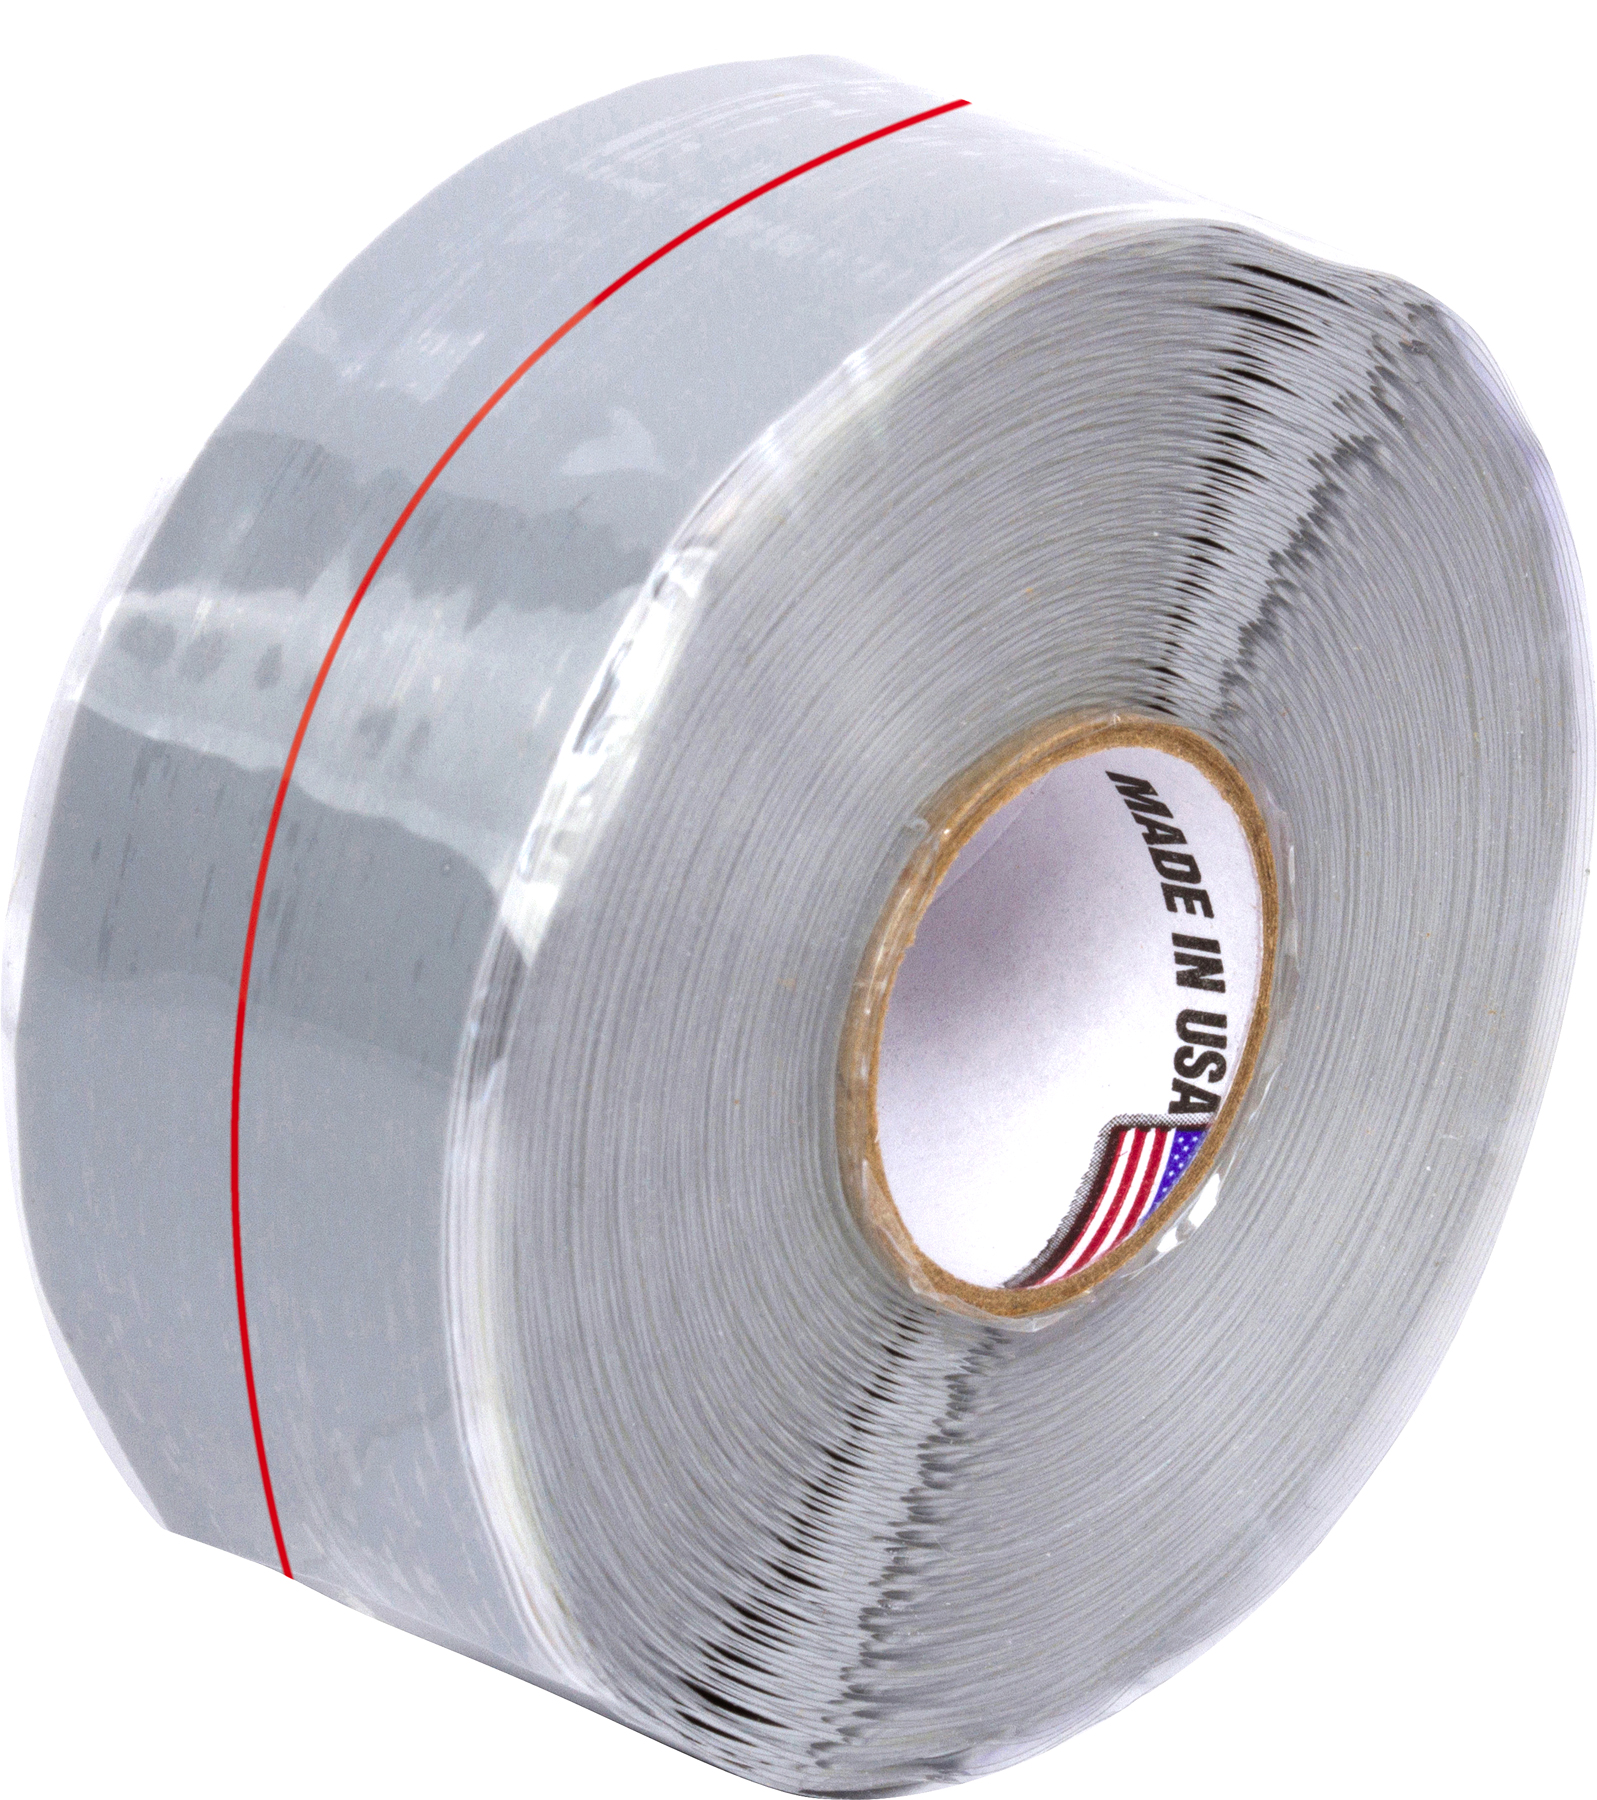 ADEZIF TO 850 Matt black cloth adhesive tape